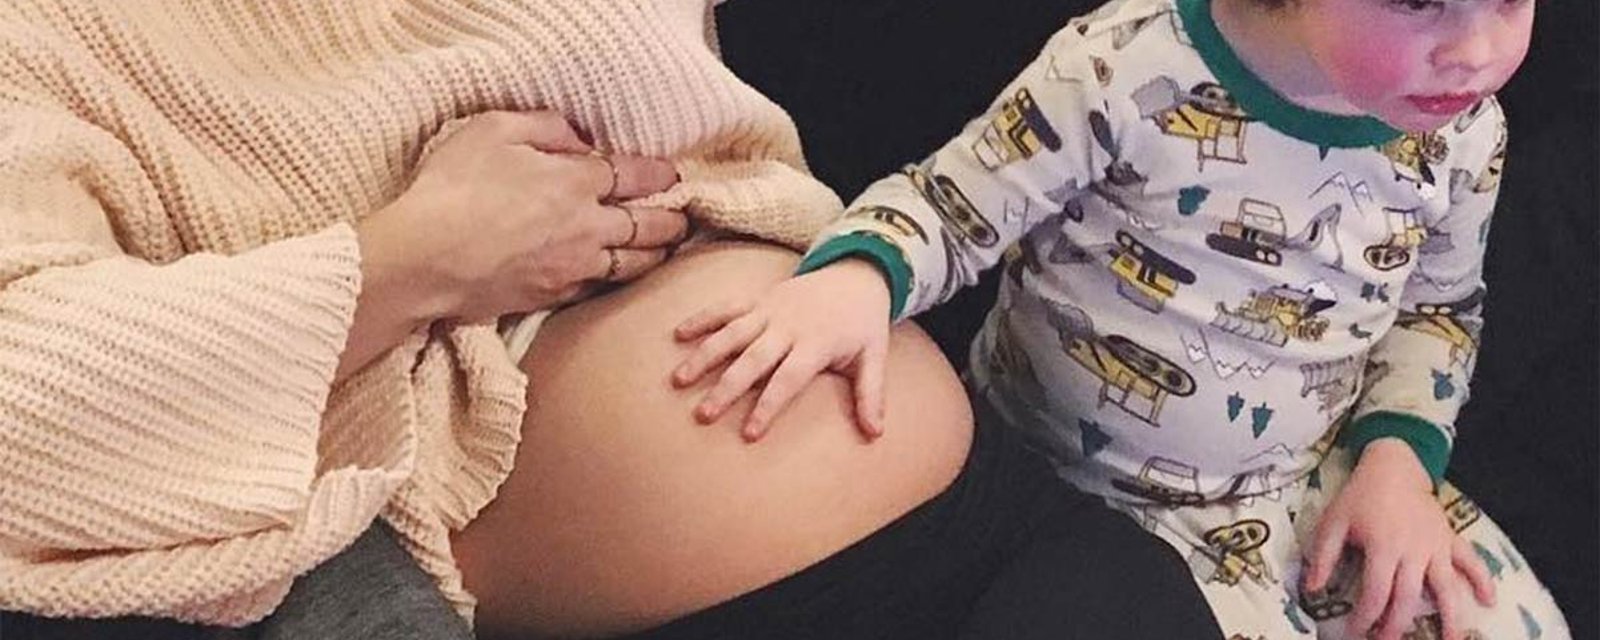 Une animatrice québécoise et sa bedaine de grossesse en mettent plein la vue sur Instagram!